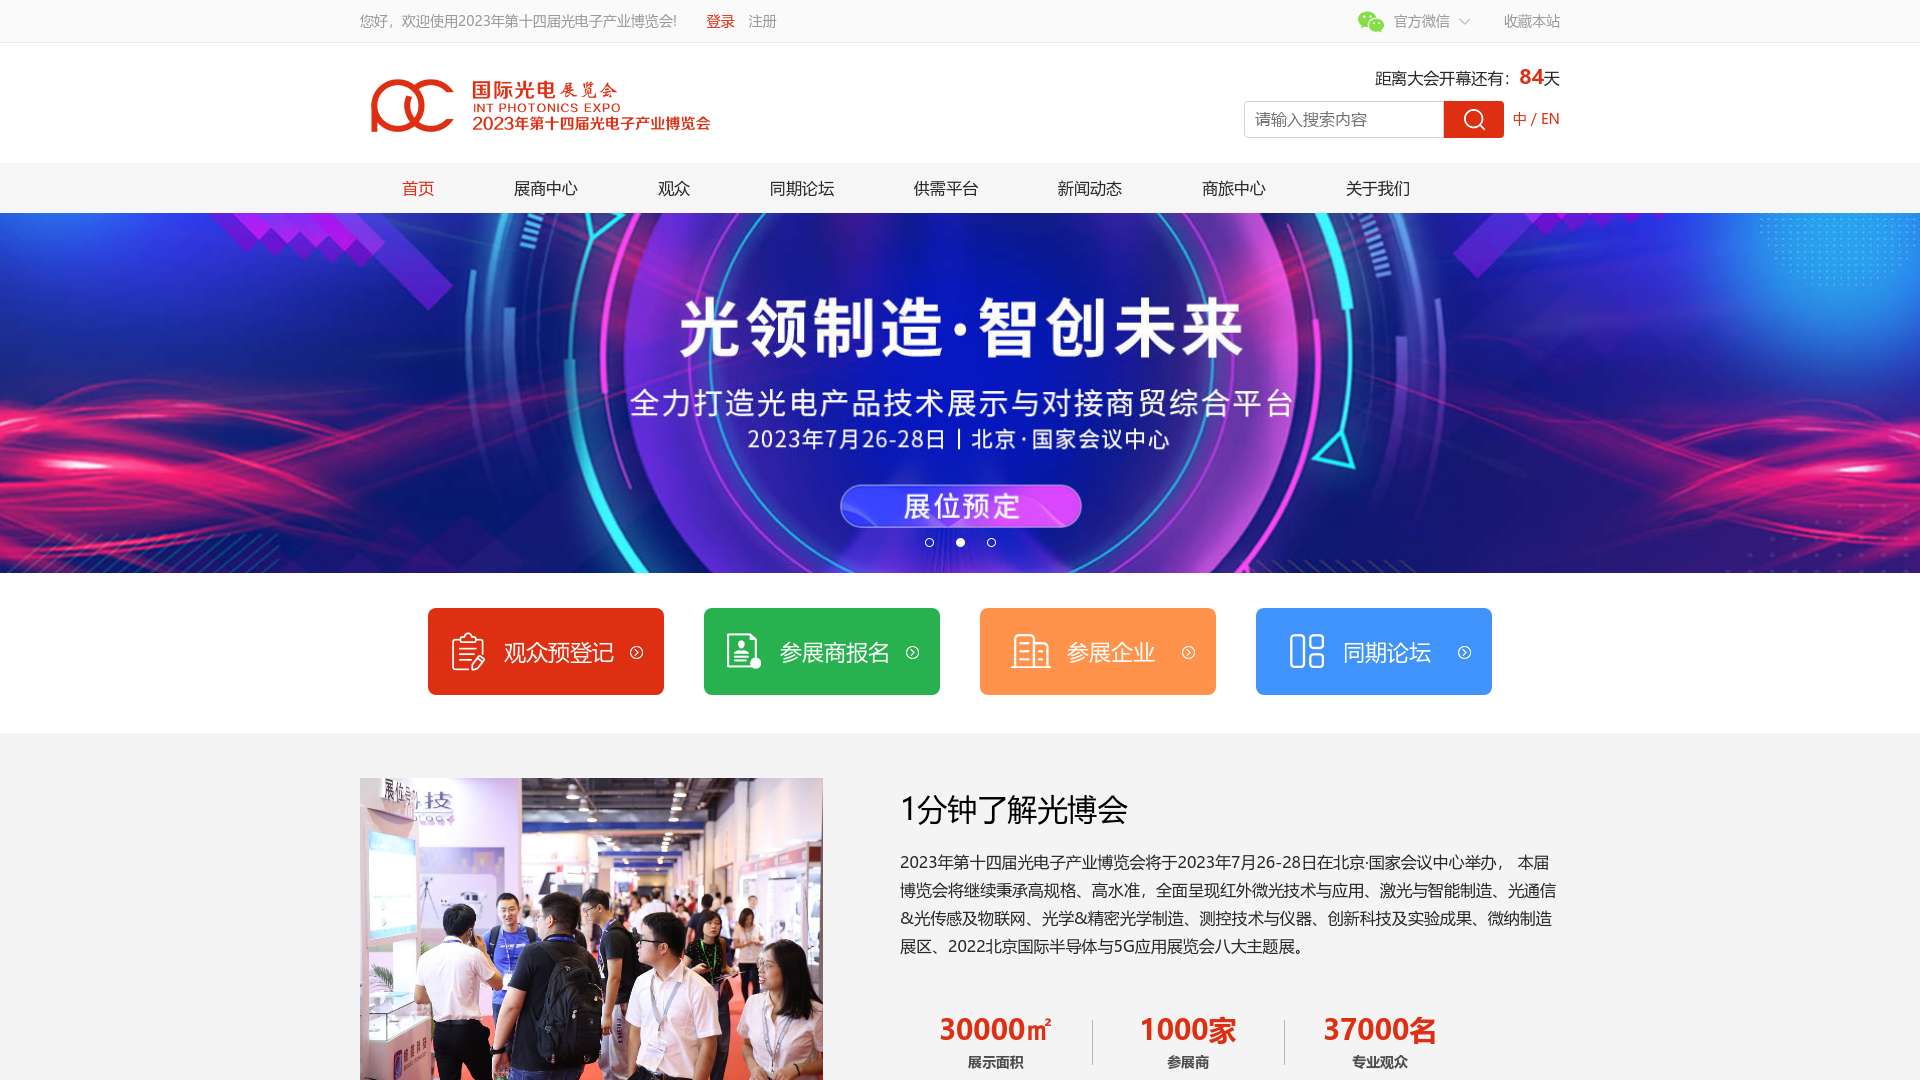 2022年光电子产业博览会|中国光博会|光博会|光电展|北京光博会|北京光电展截图时间：2023-05-03